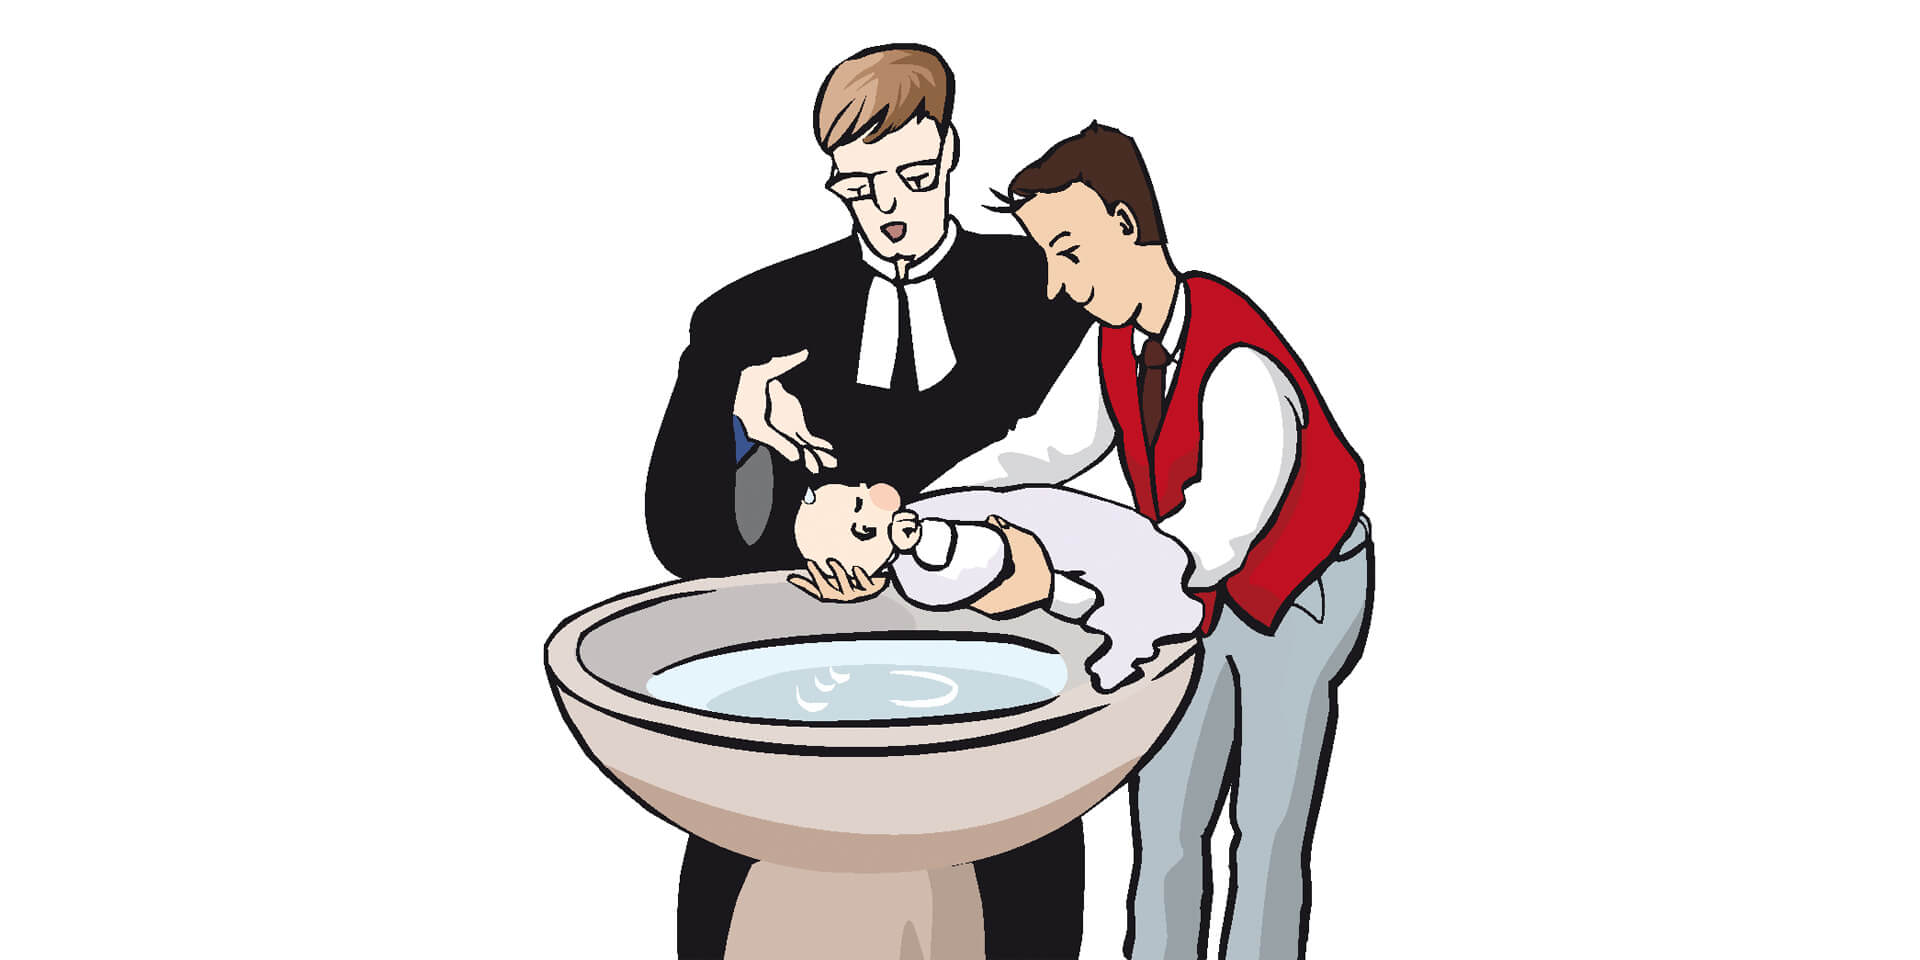 Pfarrer tauft Säugling